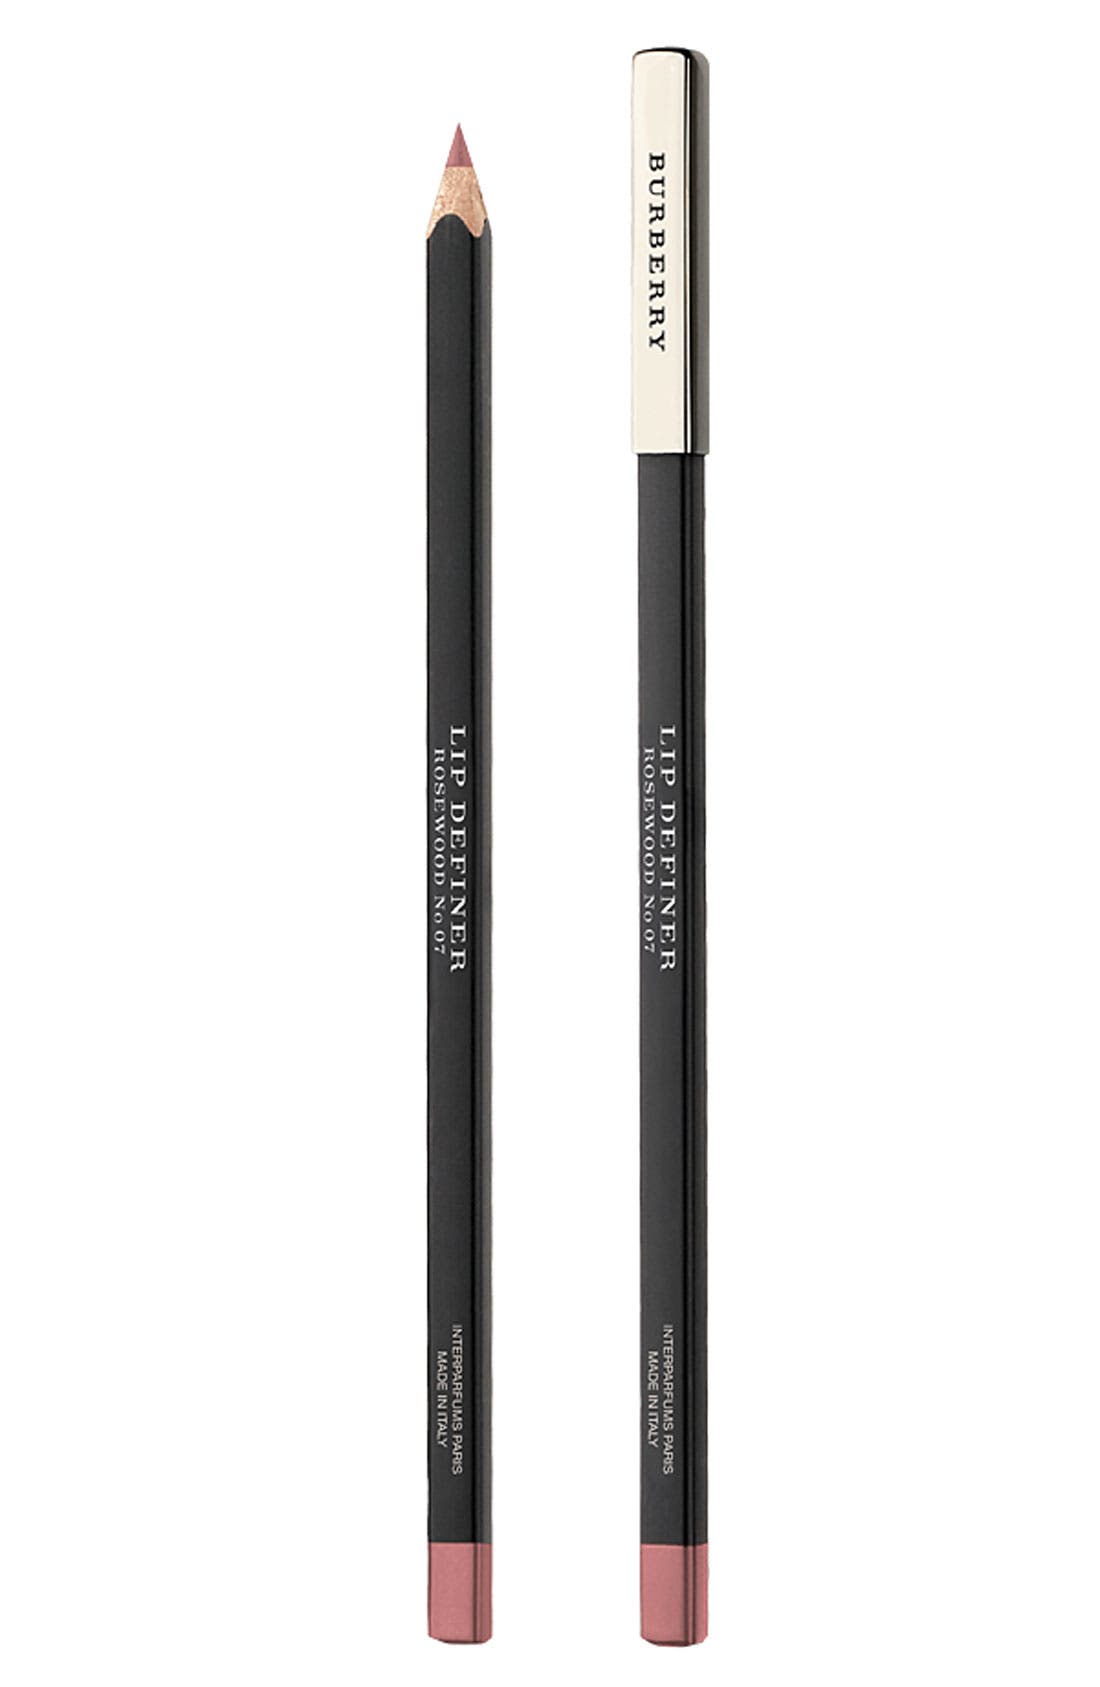 Burberry Beauty Lip Definer Pencil 